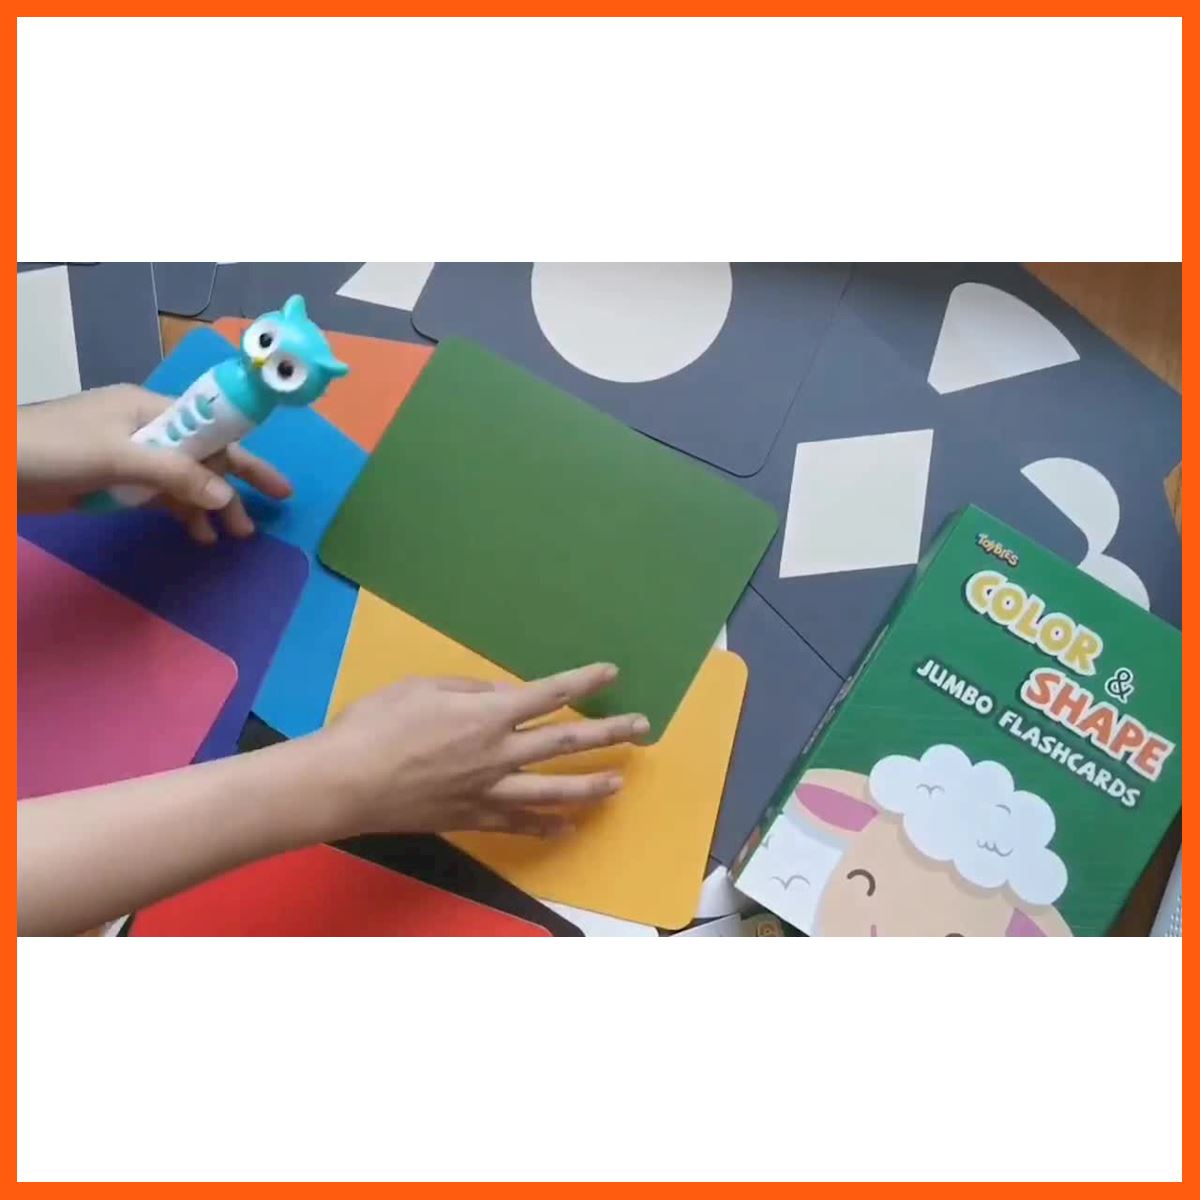 SALE Toybies บัตรคำยักษ์ Color&Shape มีเสียงพูด เมื่อใช้ร่วมกับปากกาพูดได้ Toybiesหนา ฉีกไม่ขาด พิมพ์ด้วยหมึกถั่วเหลือง เกมและอุปกรณ์เสริม แผ่นและตลับเกม เพลย์สเตชั่น